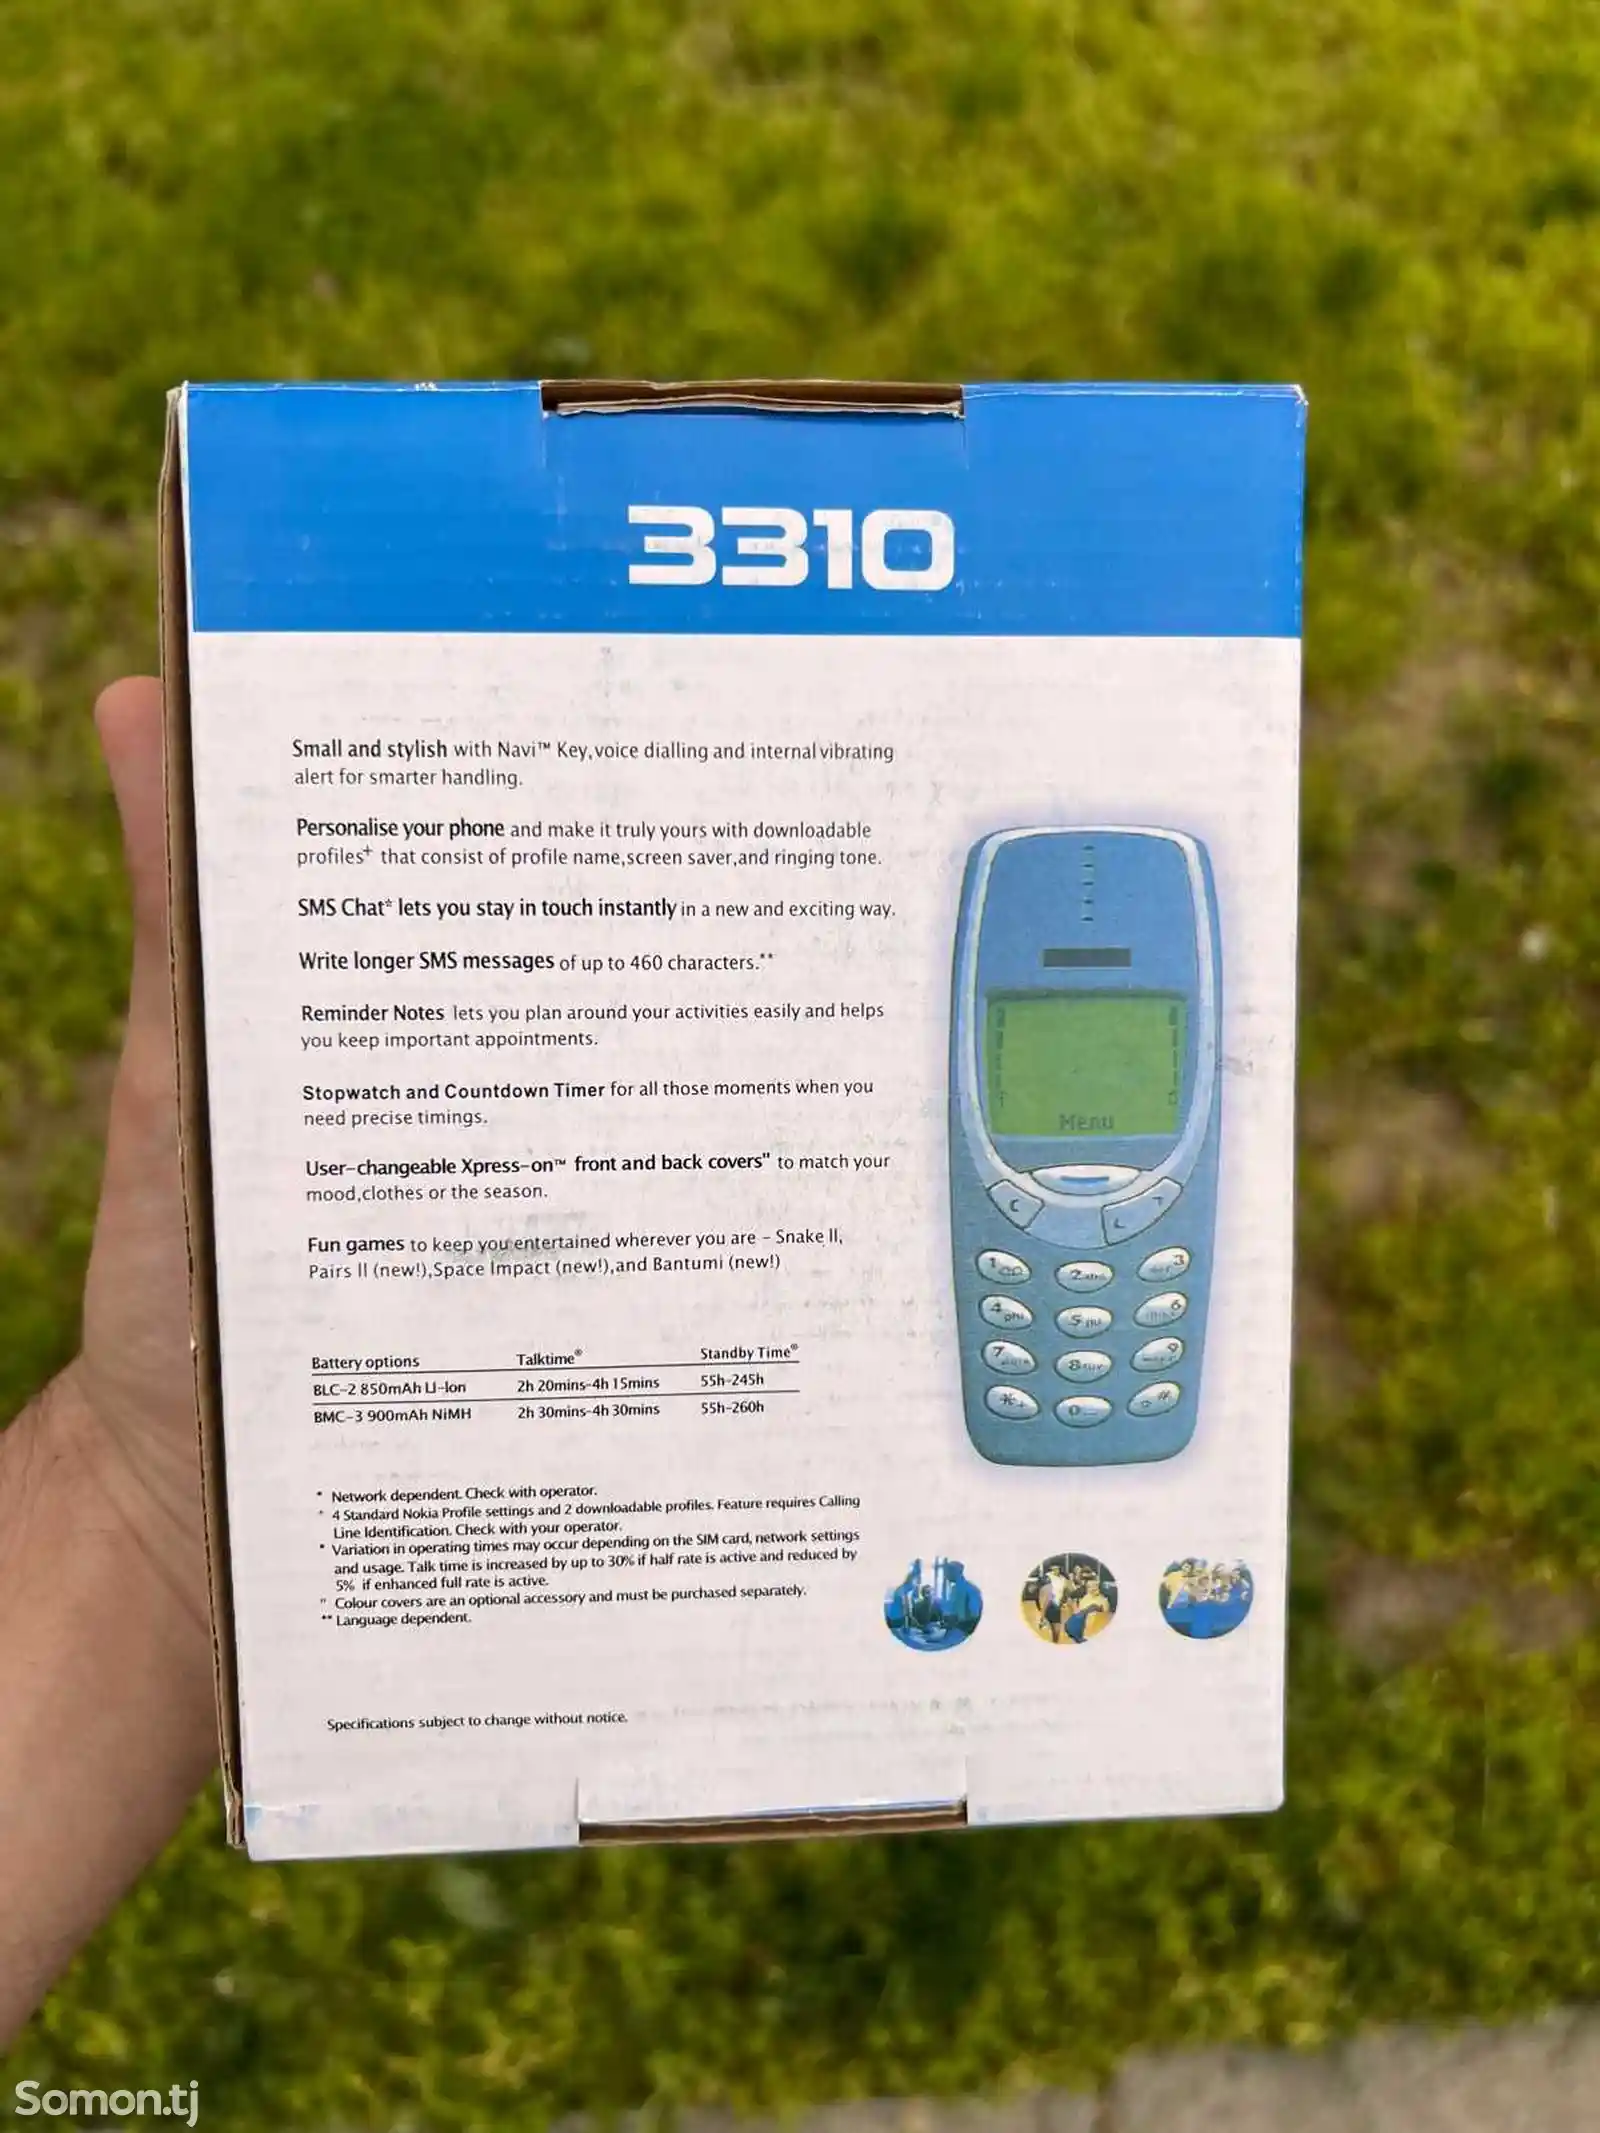 Nokia 3310-5